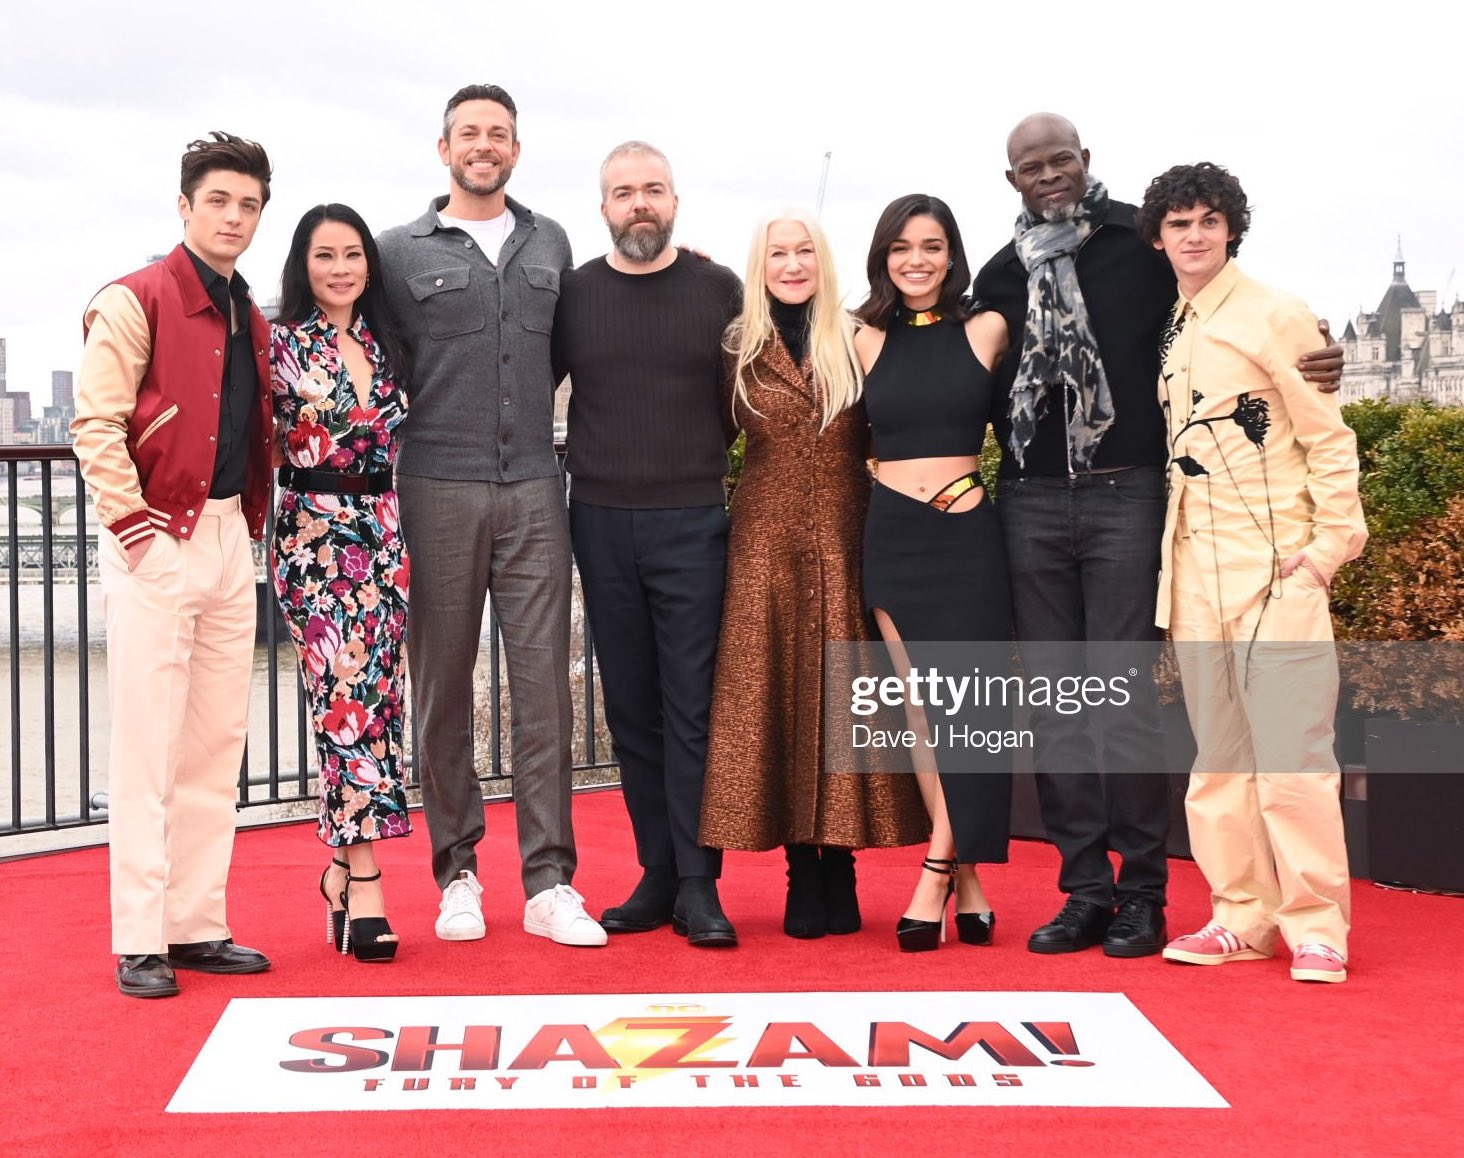 Shazam Updates on X: The cast of #Shazam: Fury of the Gods at the